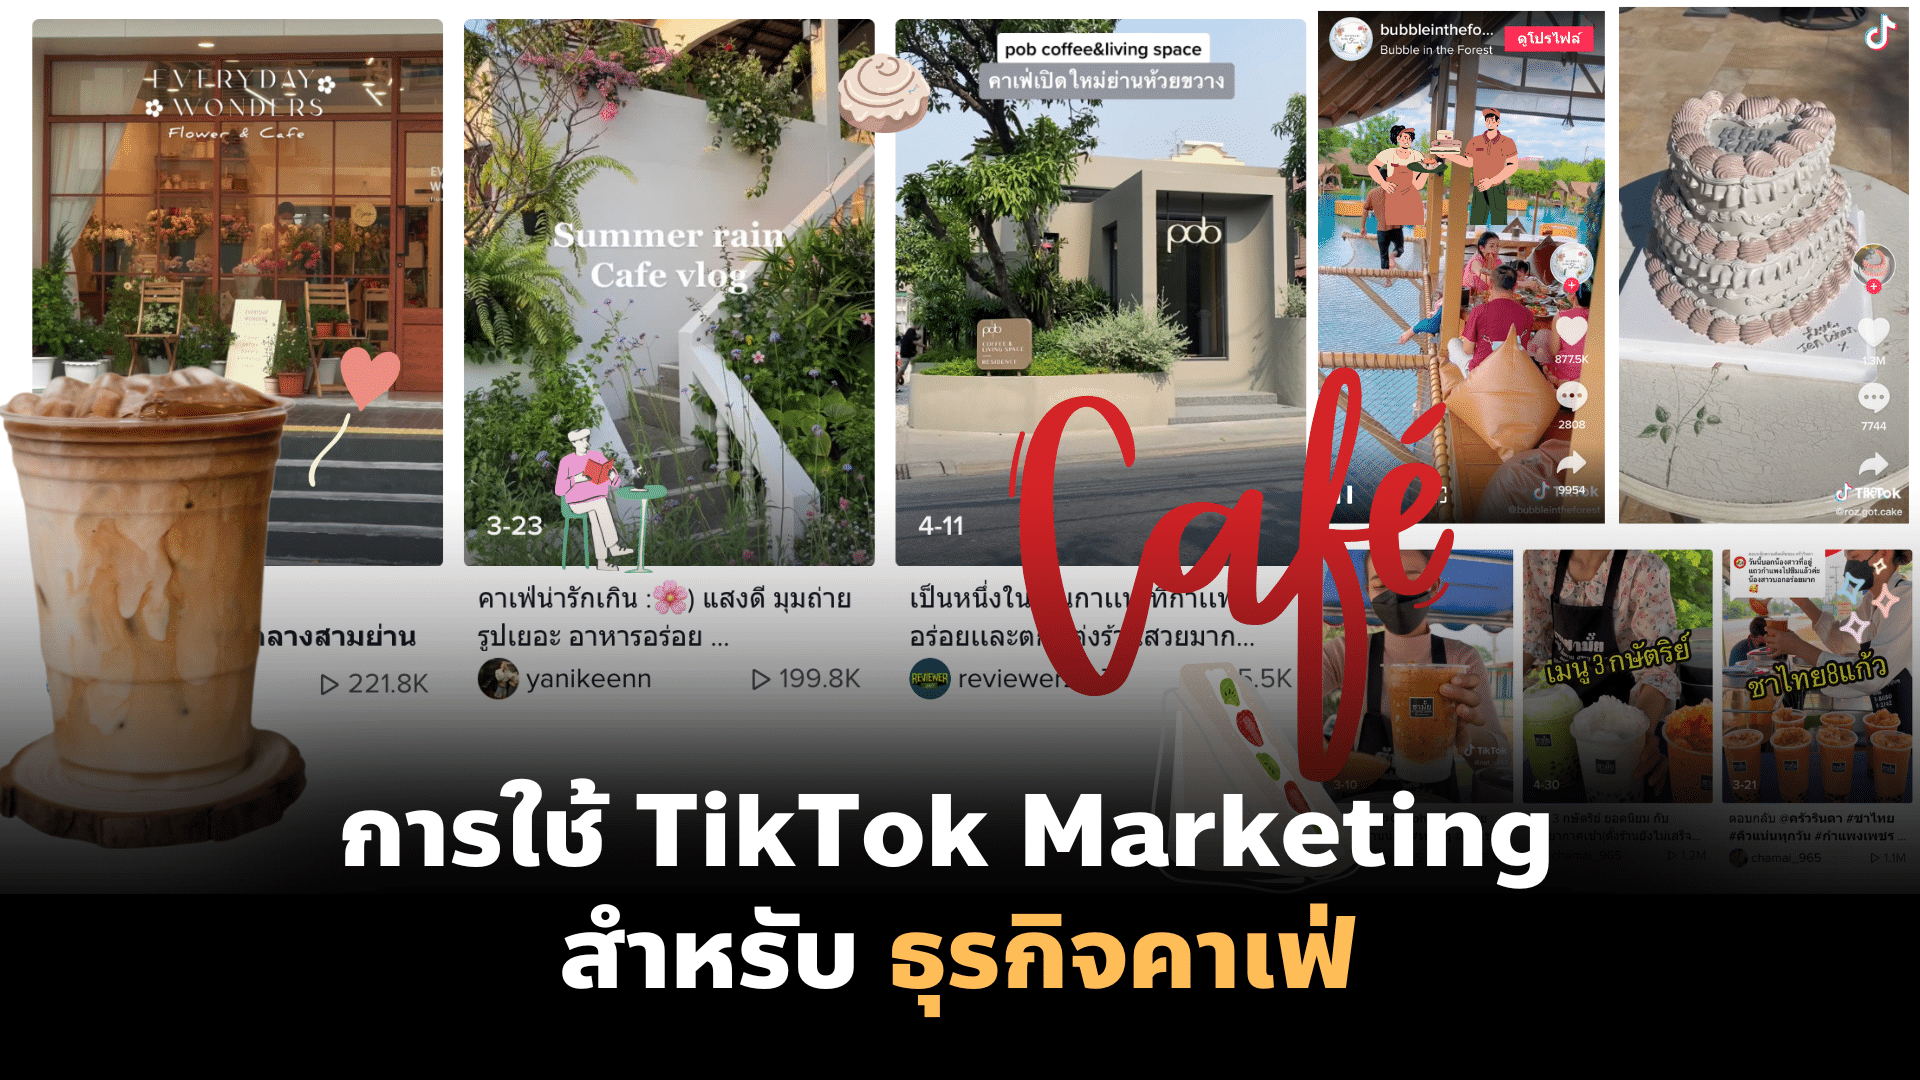 การใช้ TikTok Marketing สำหรับ ธุรกิจคาเฟ่ ร้านกาแฟ